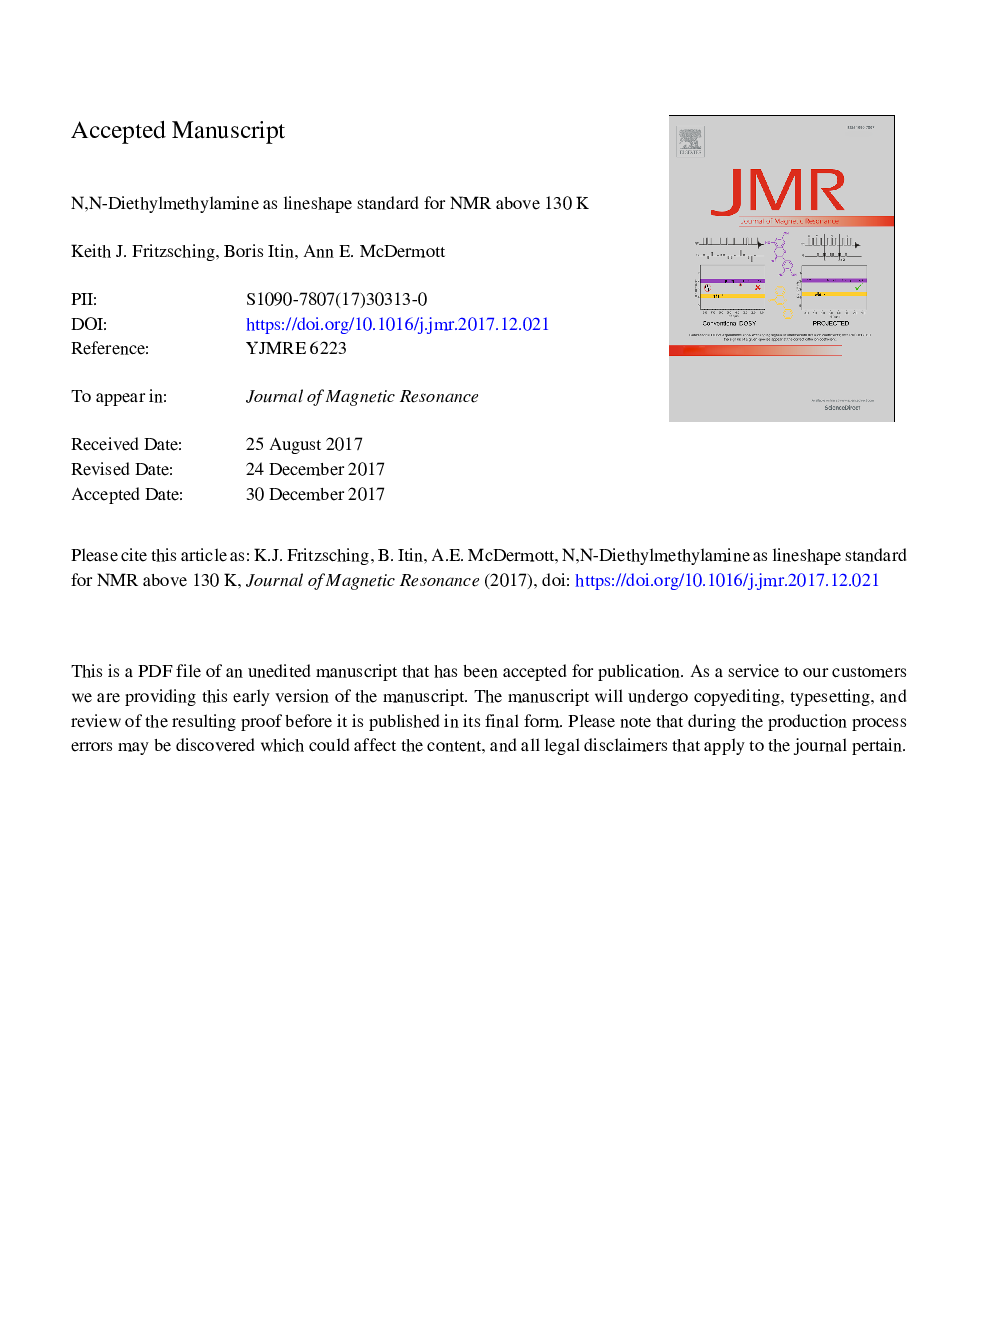 N,N-Diethylmethylamine as lineshape standard for NMR above 130â¯K